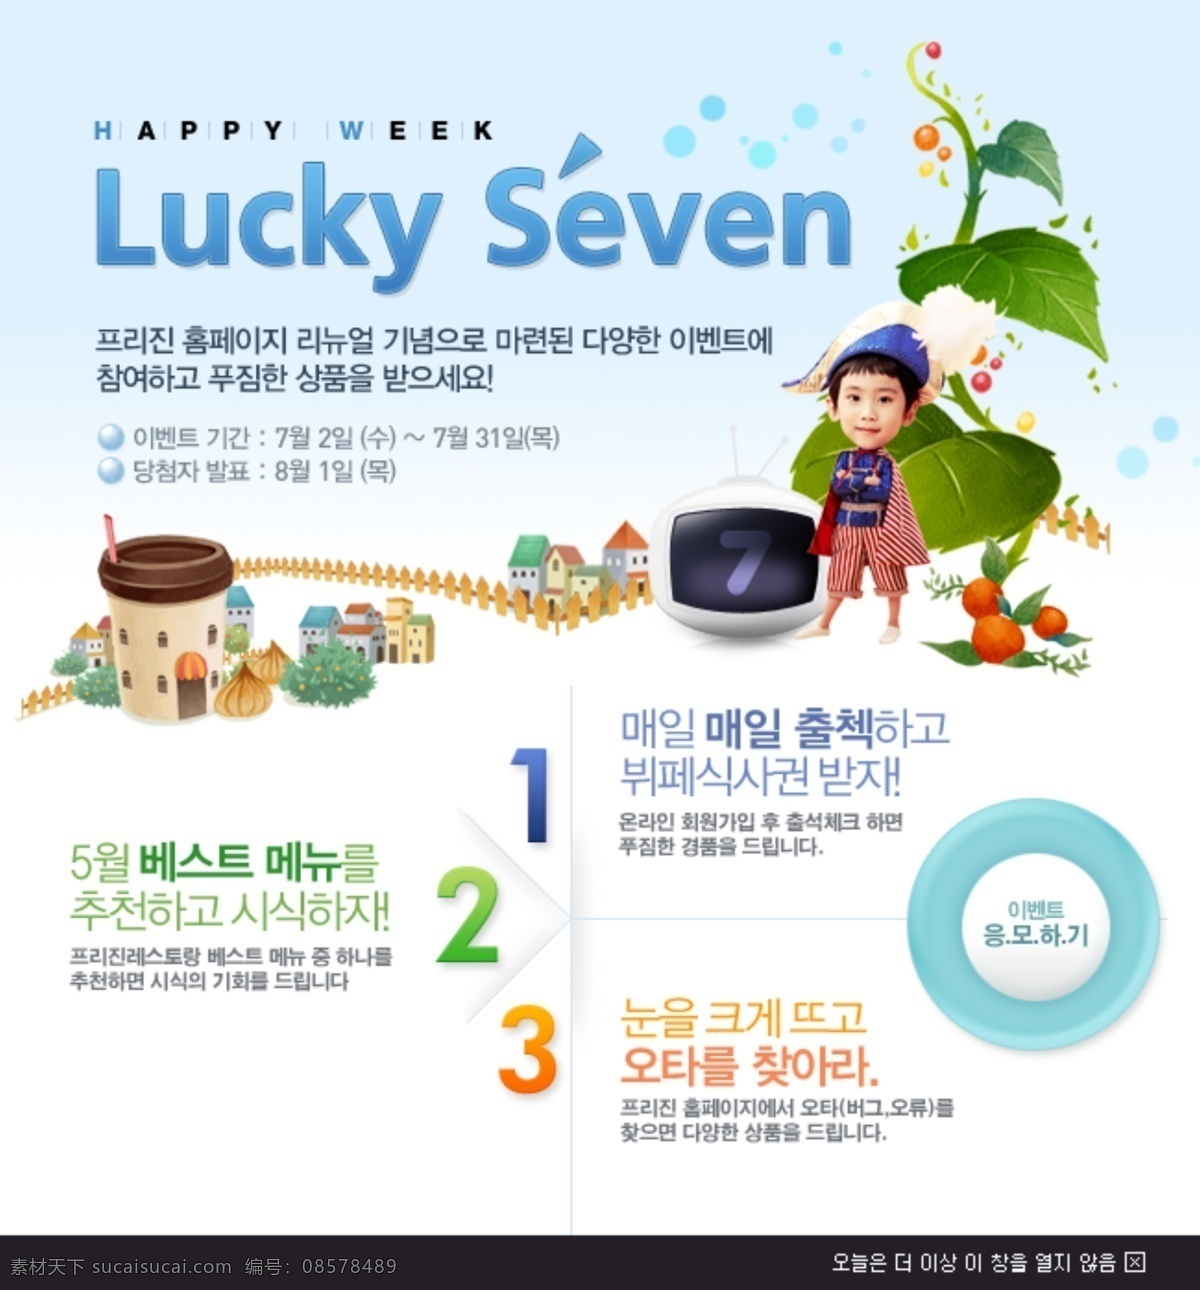 可爱 卡通 页面 模版 韩文字体 卡通人物 可爱卡通素材 蓝色按钮 树藤 艺术字 lucky seven 彩色房屋 网页素材 网页模板